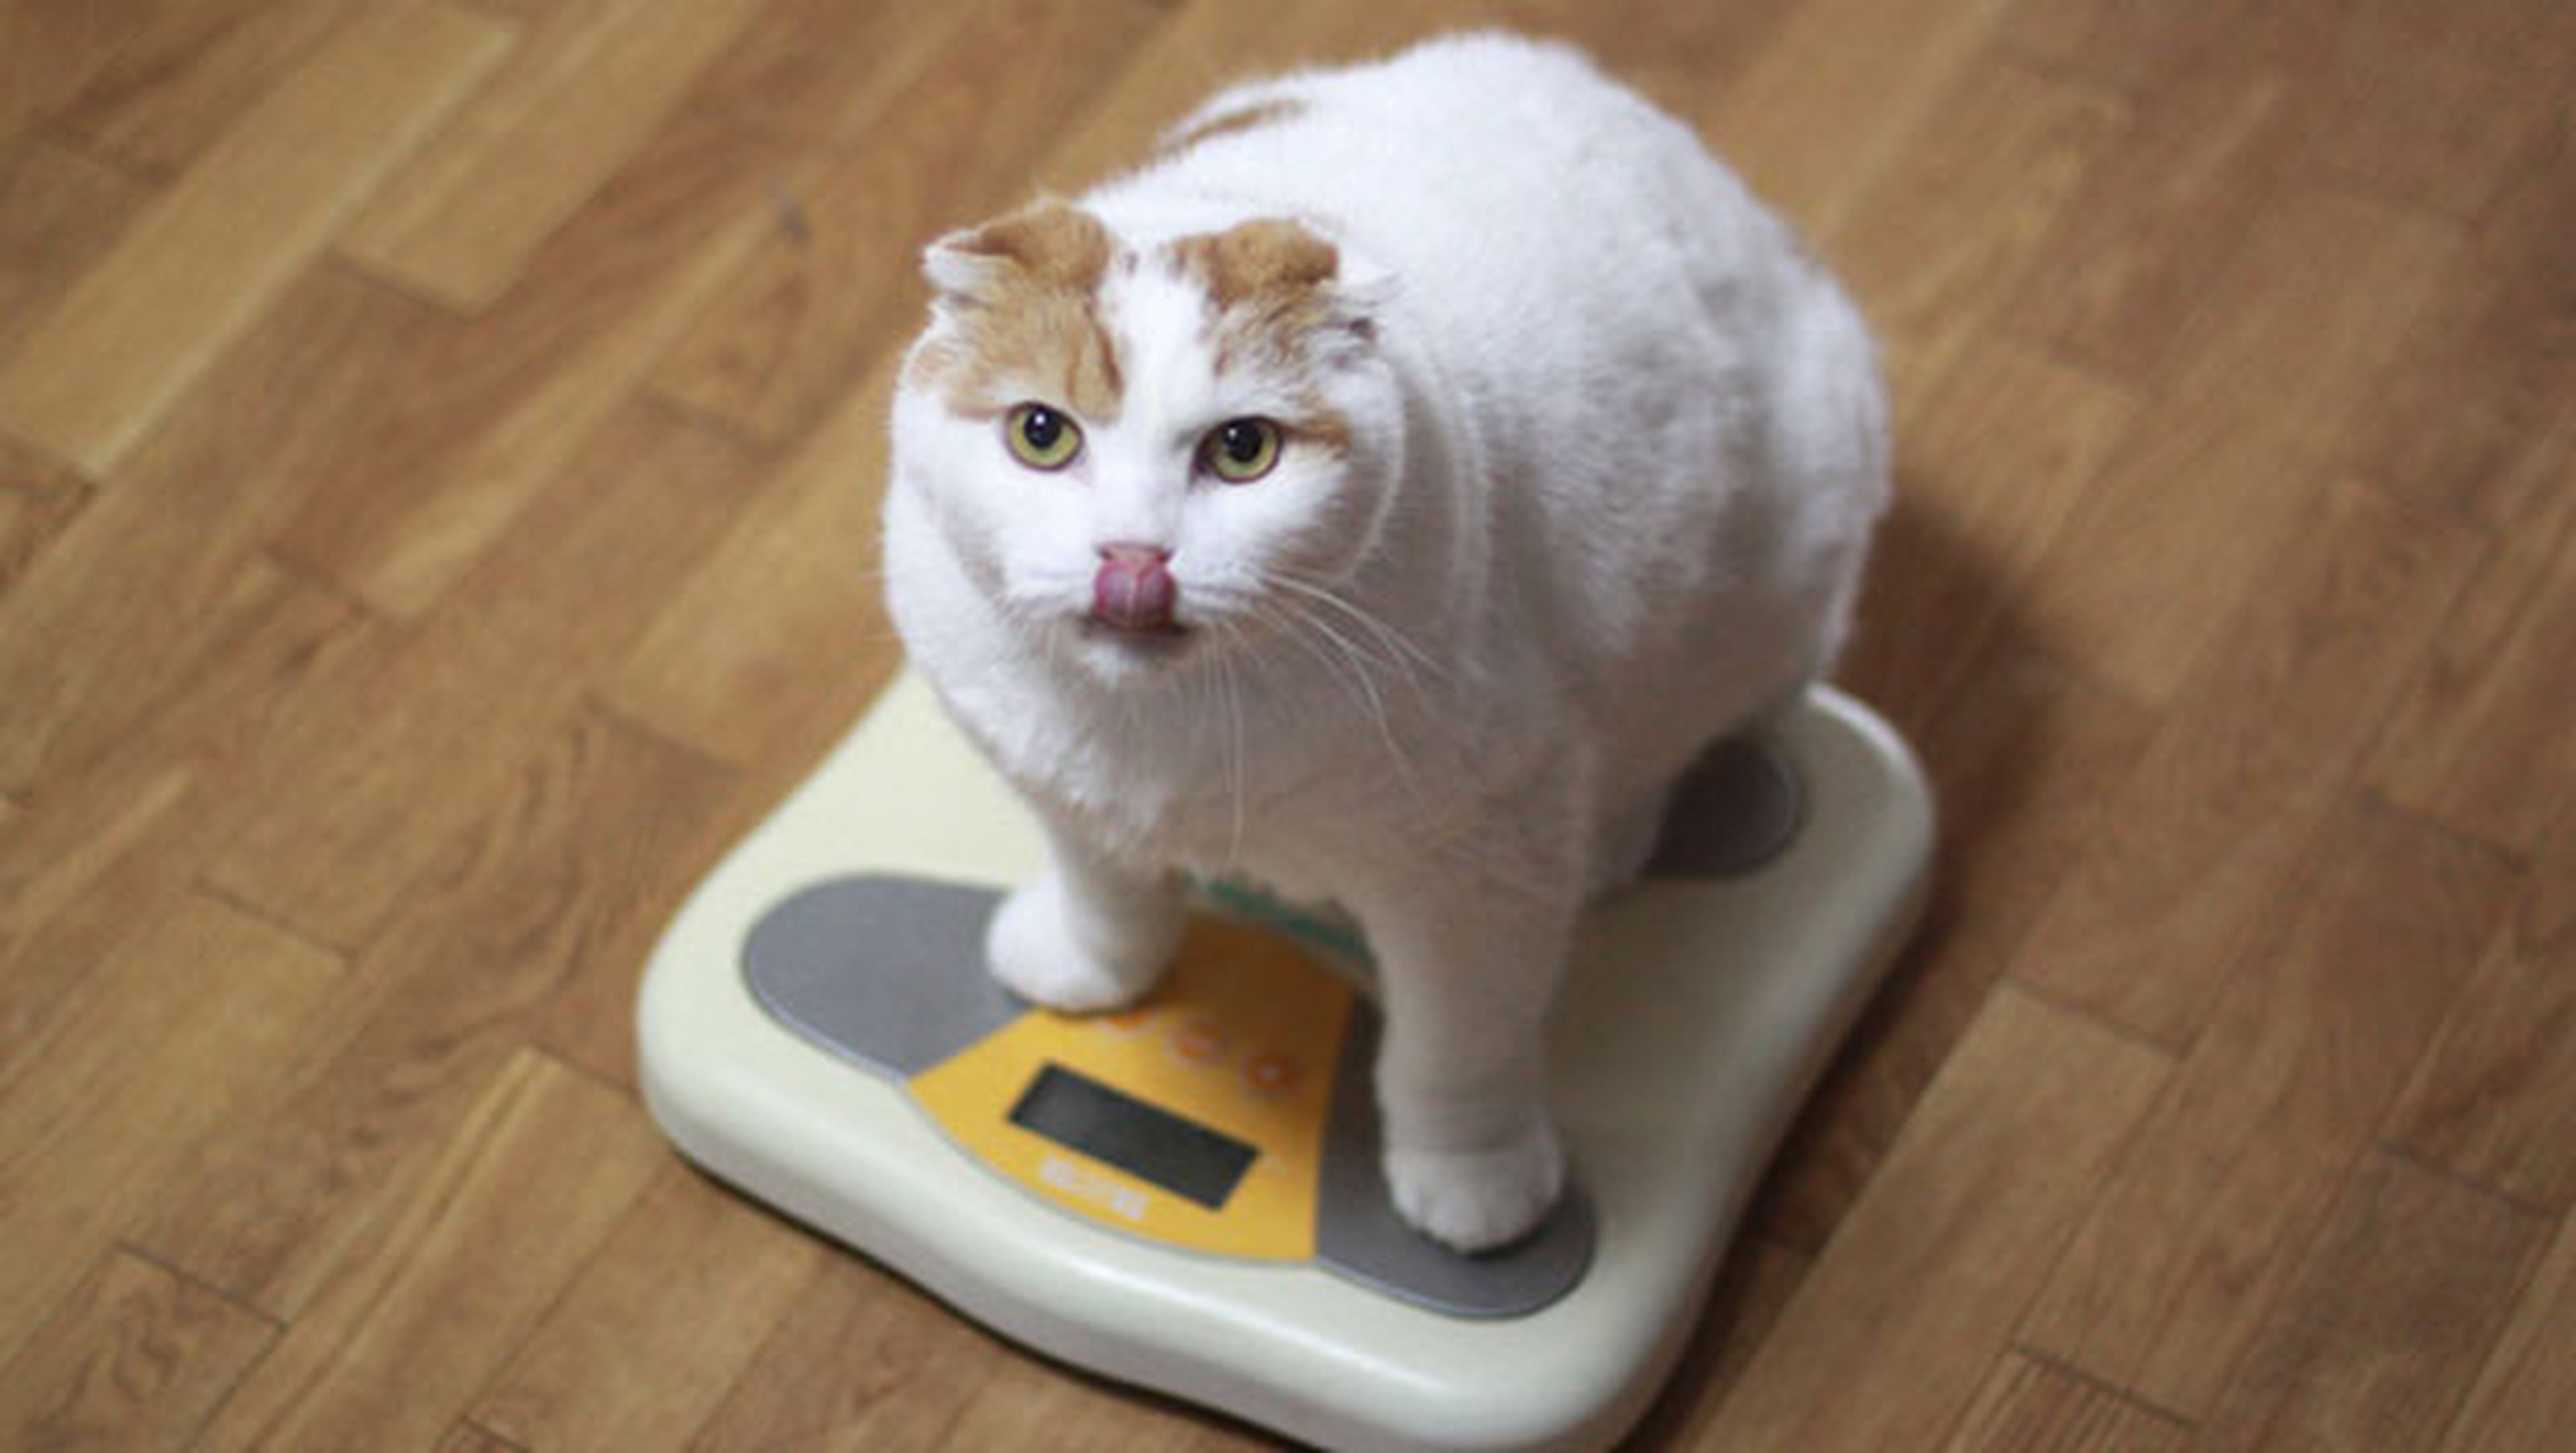 gato obeso